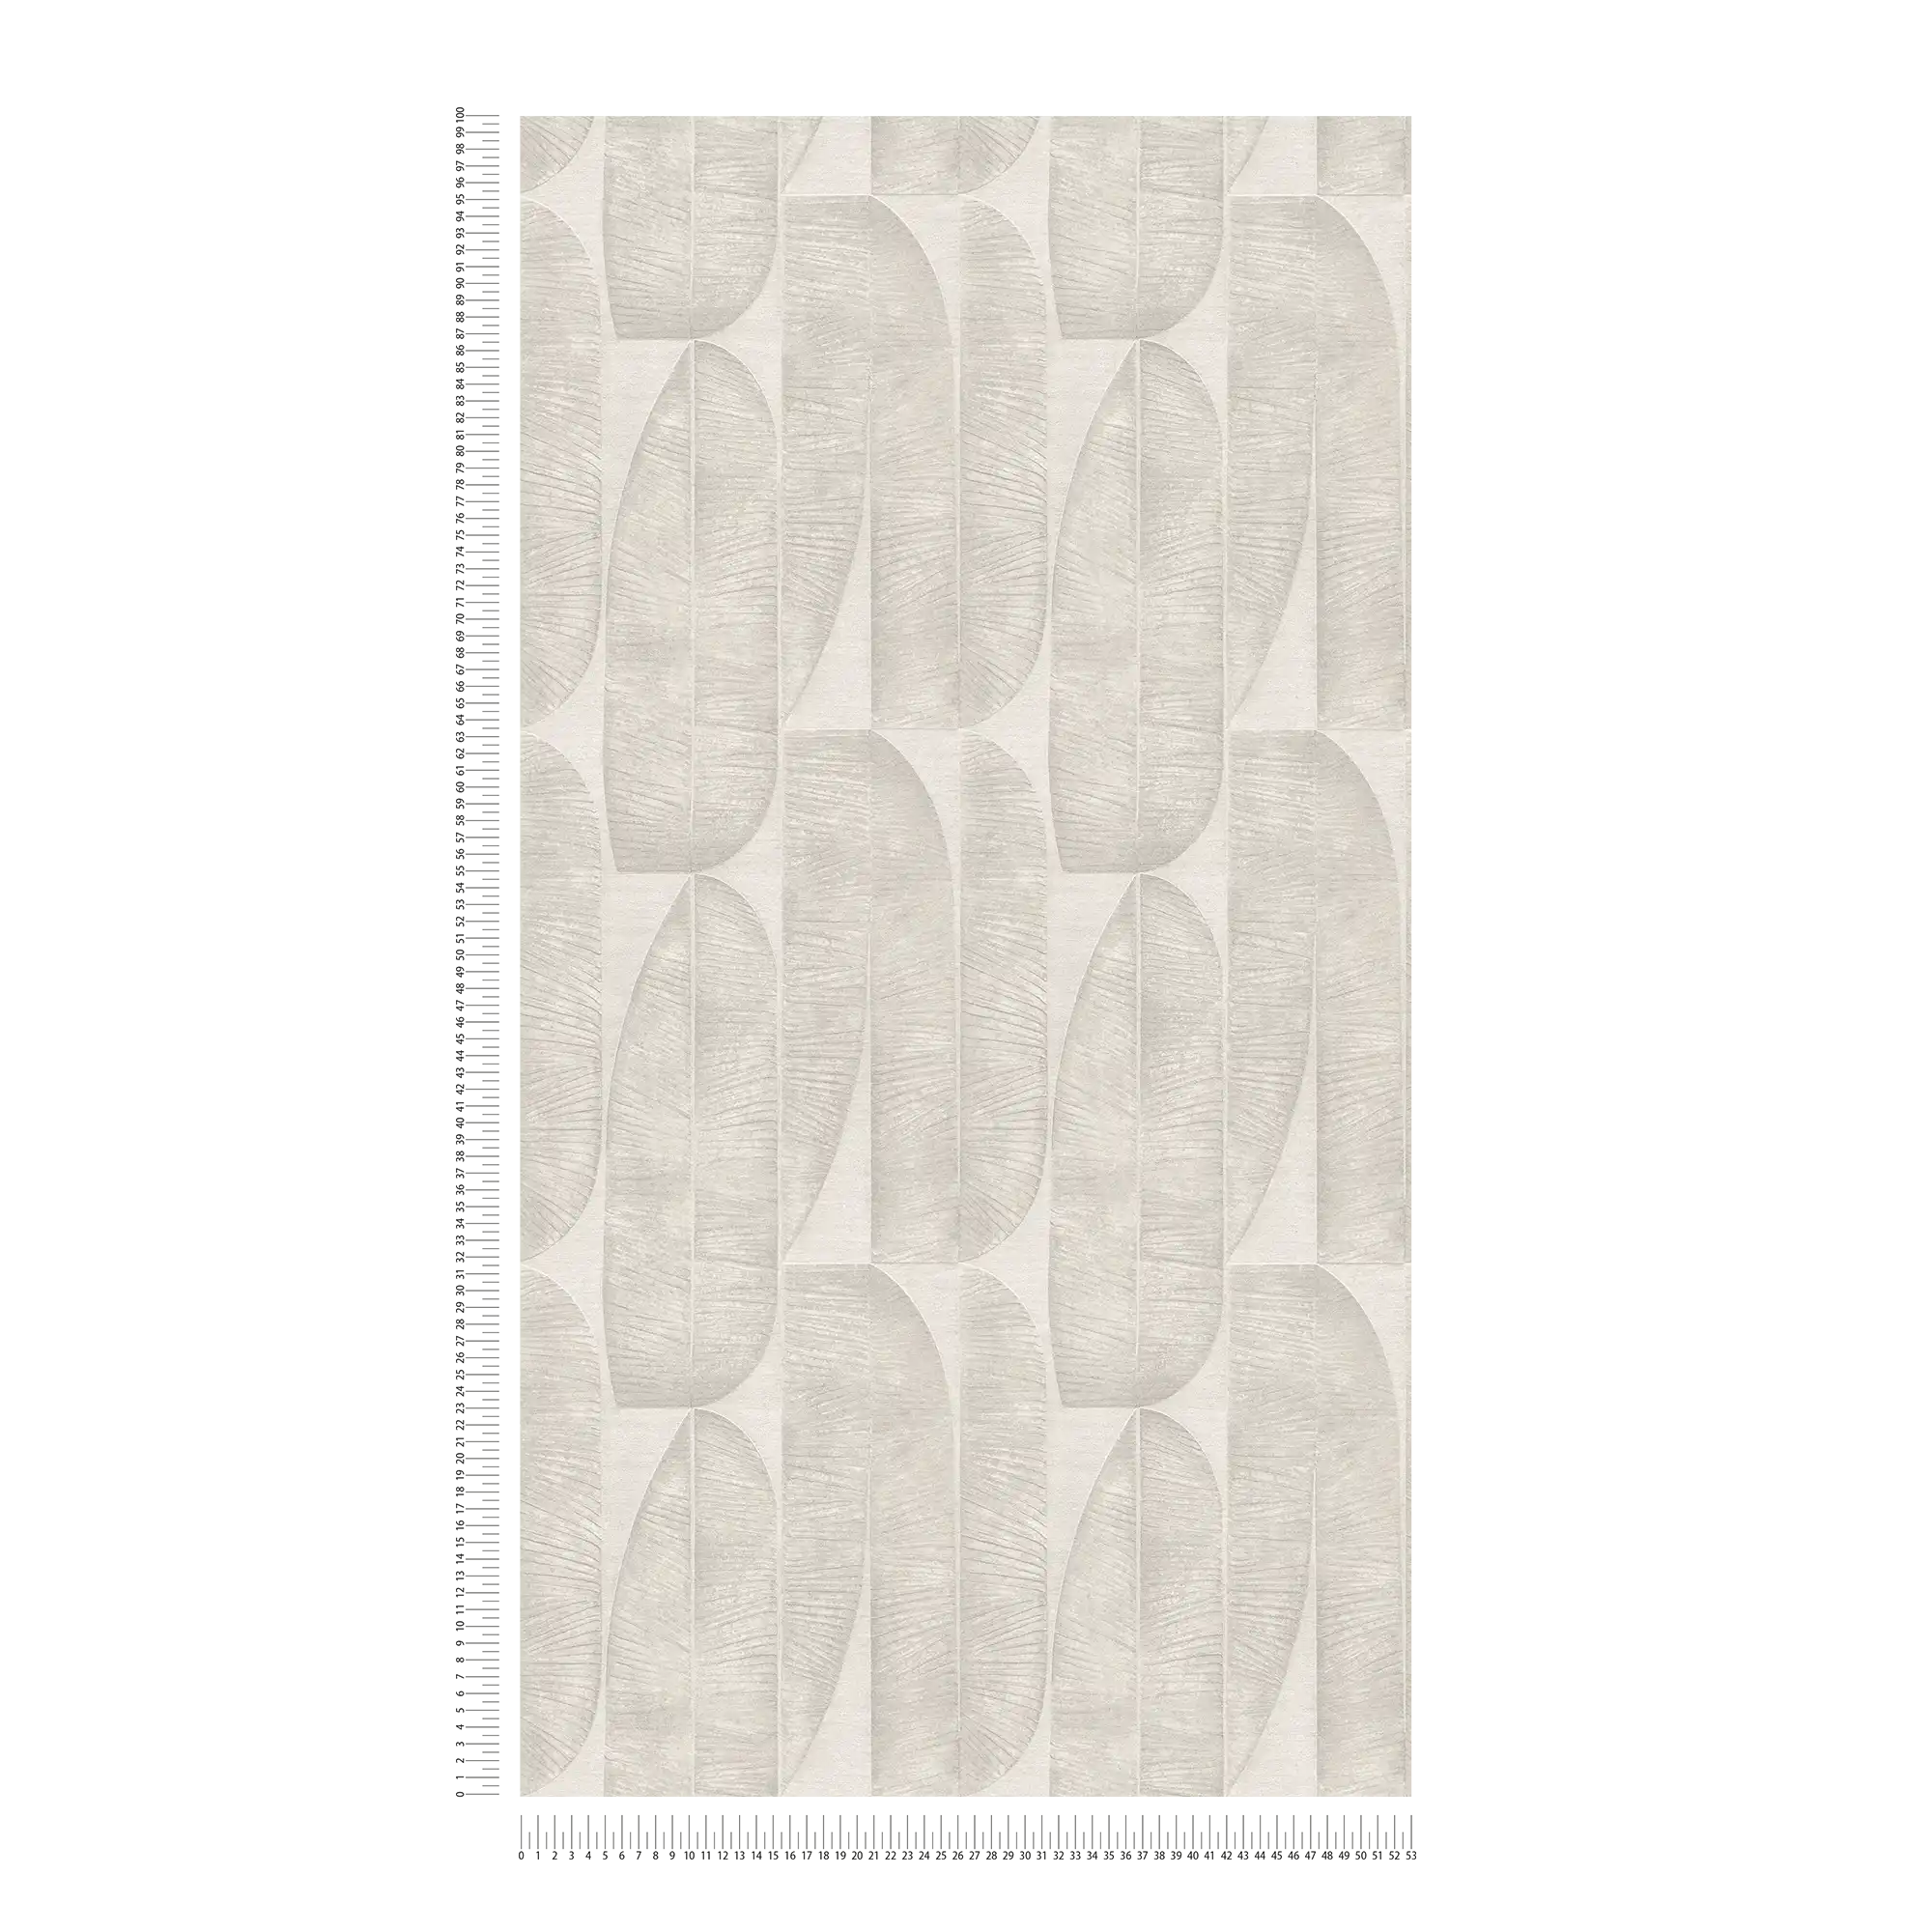             Vliesbehang met geometrisch bloempatroon - grijs, beige
        